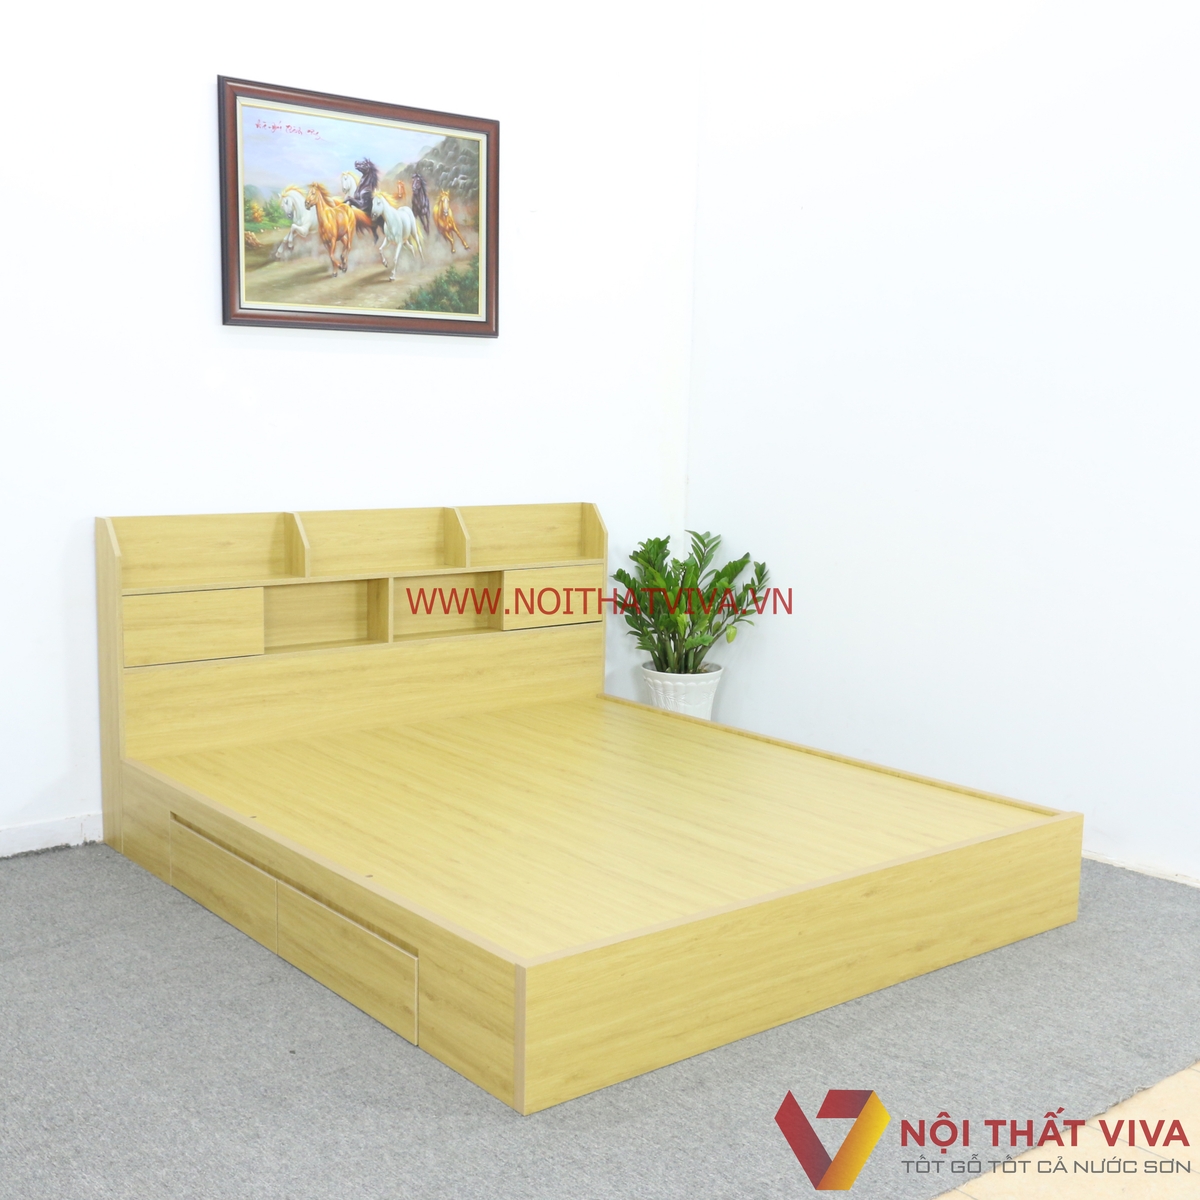 Làm sao để chọn đúng giường ngủ quận Tân Phú giá rẻ mà chất lượng?